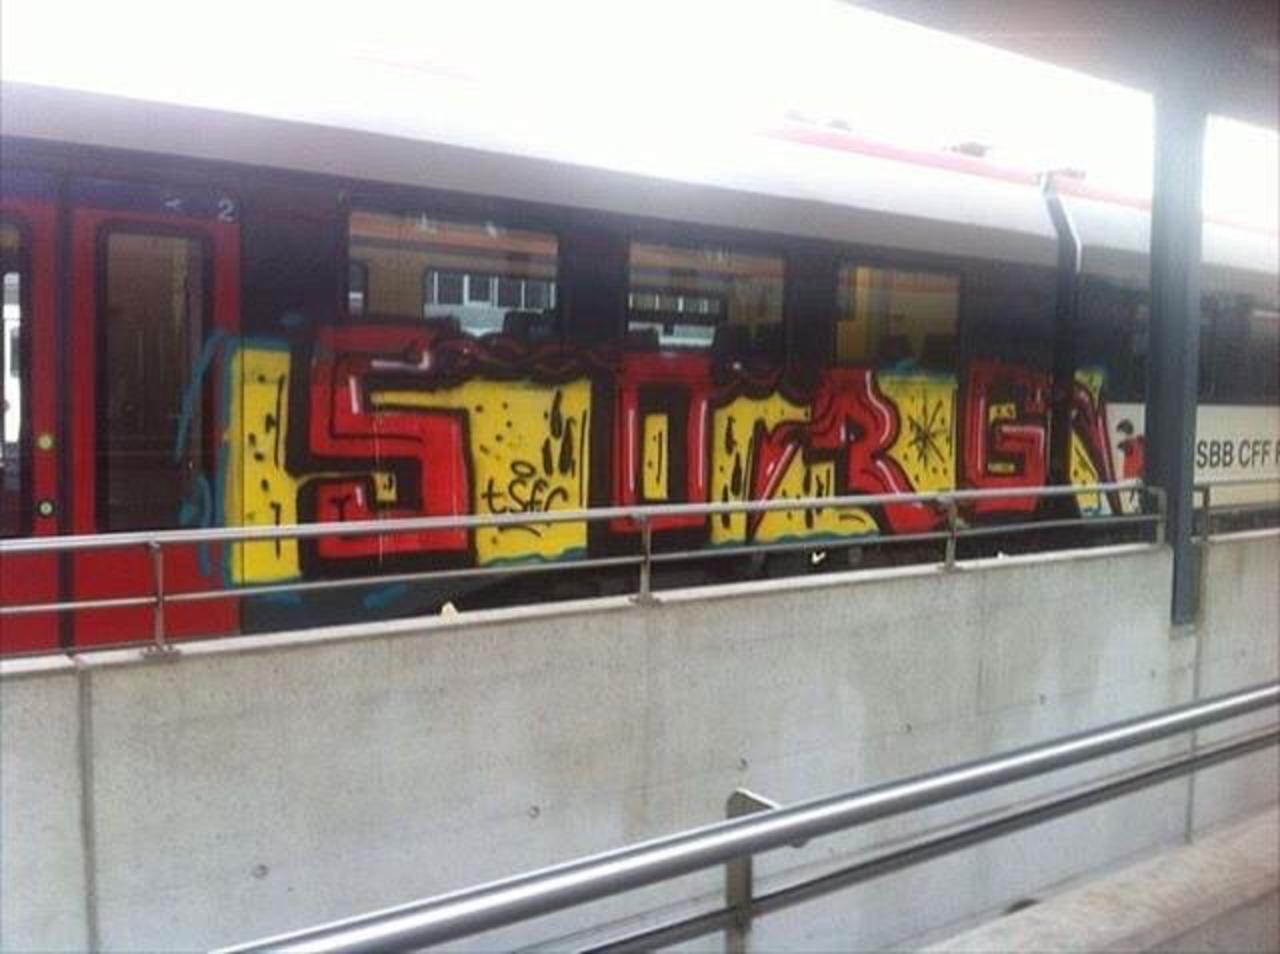 RT @artpushr: via #swiss.trains "http://bit.ly/1LXRDhD" #graffiti #streetart http://t.co/0uSiO4TcUt